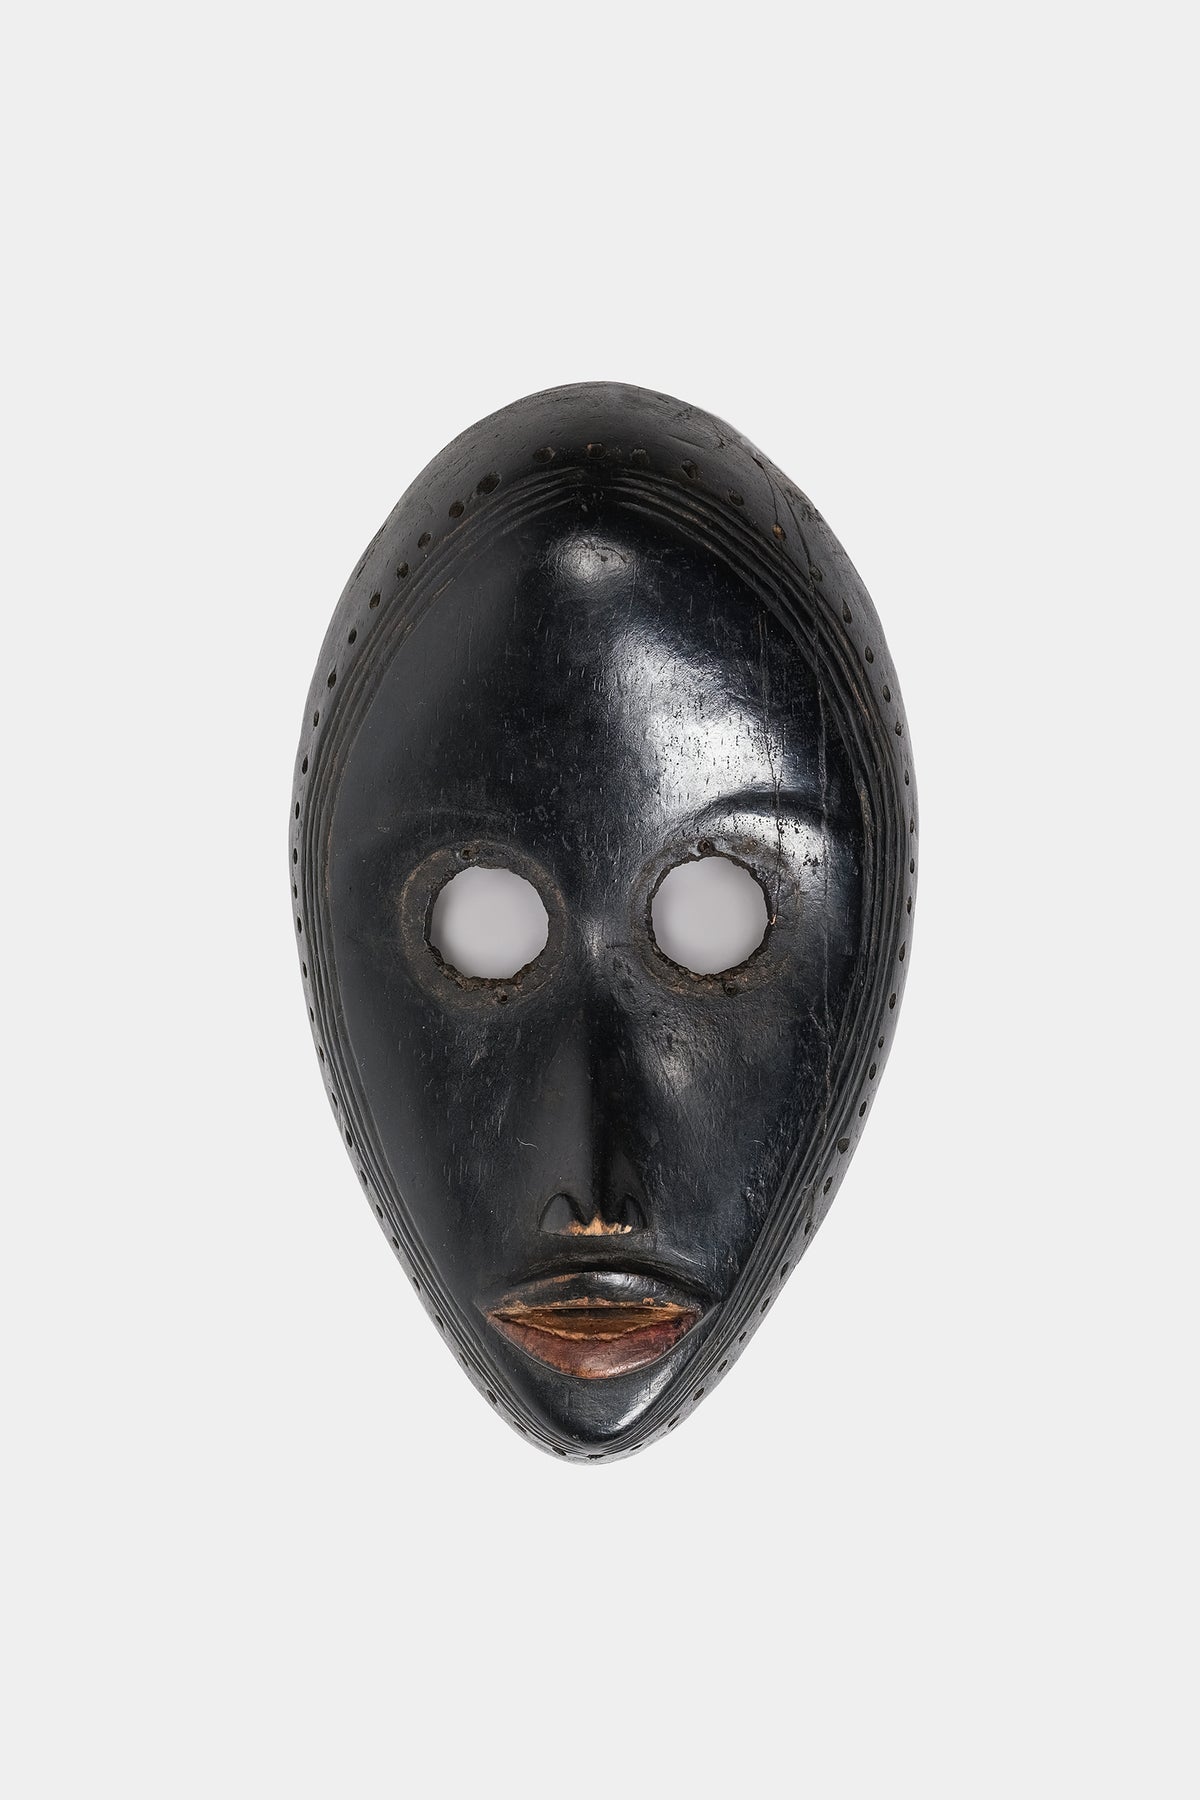 Mask, Dan Yacouba, West Africa, 30s